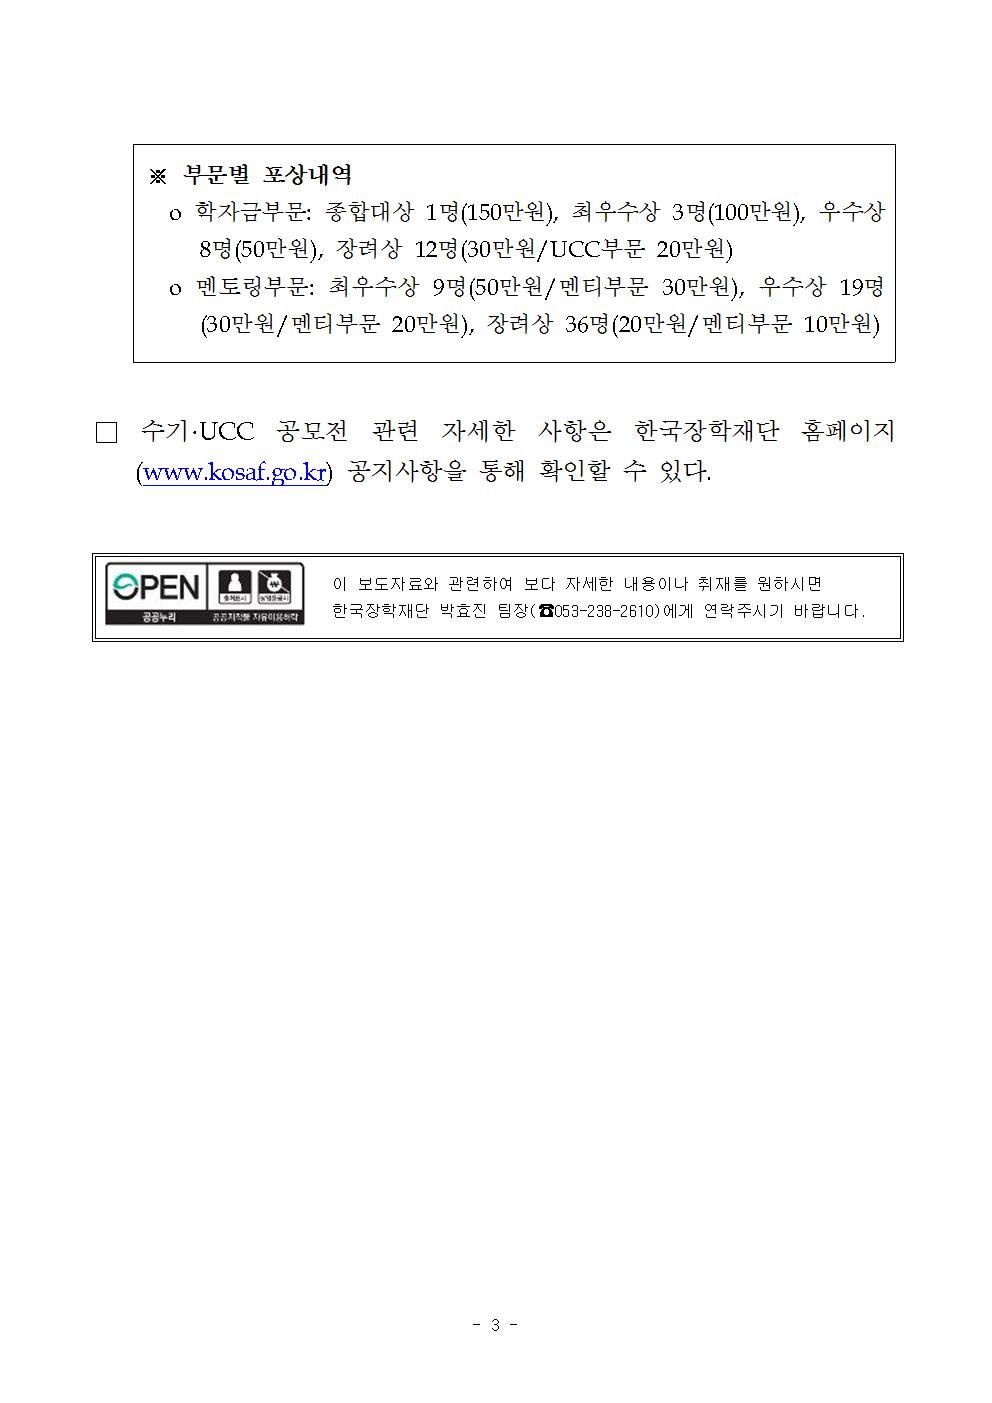 03-13(월)[보도자료] 제9회 한국장학재단 수기 UCC 공모전 개최(최종)003.jpg